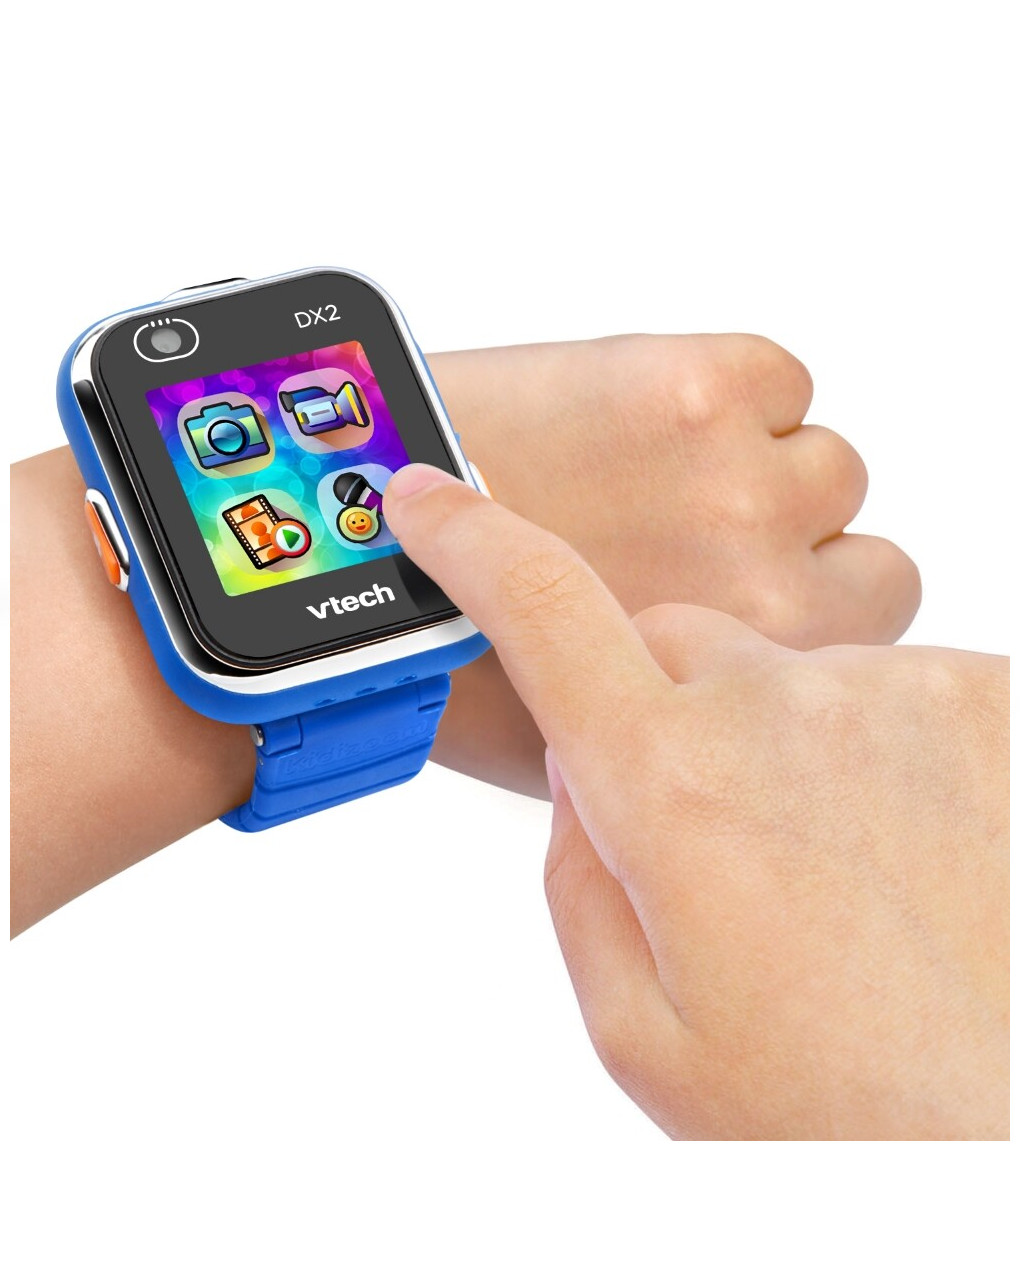 Kidizoom ® smartwatch dx2 blu 5-13 anni - vtech - VTECH